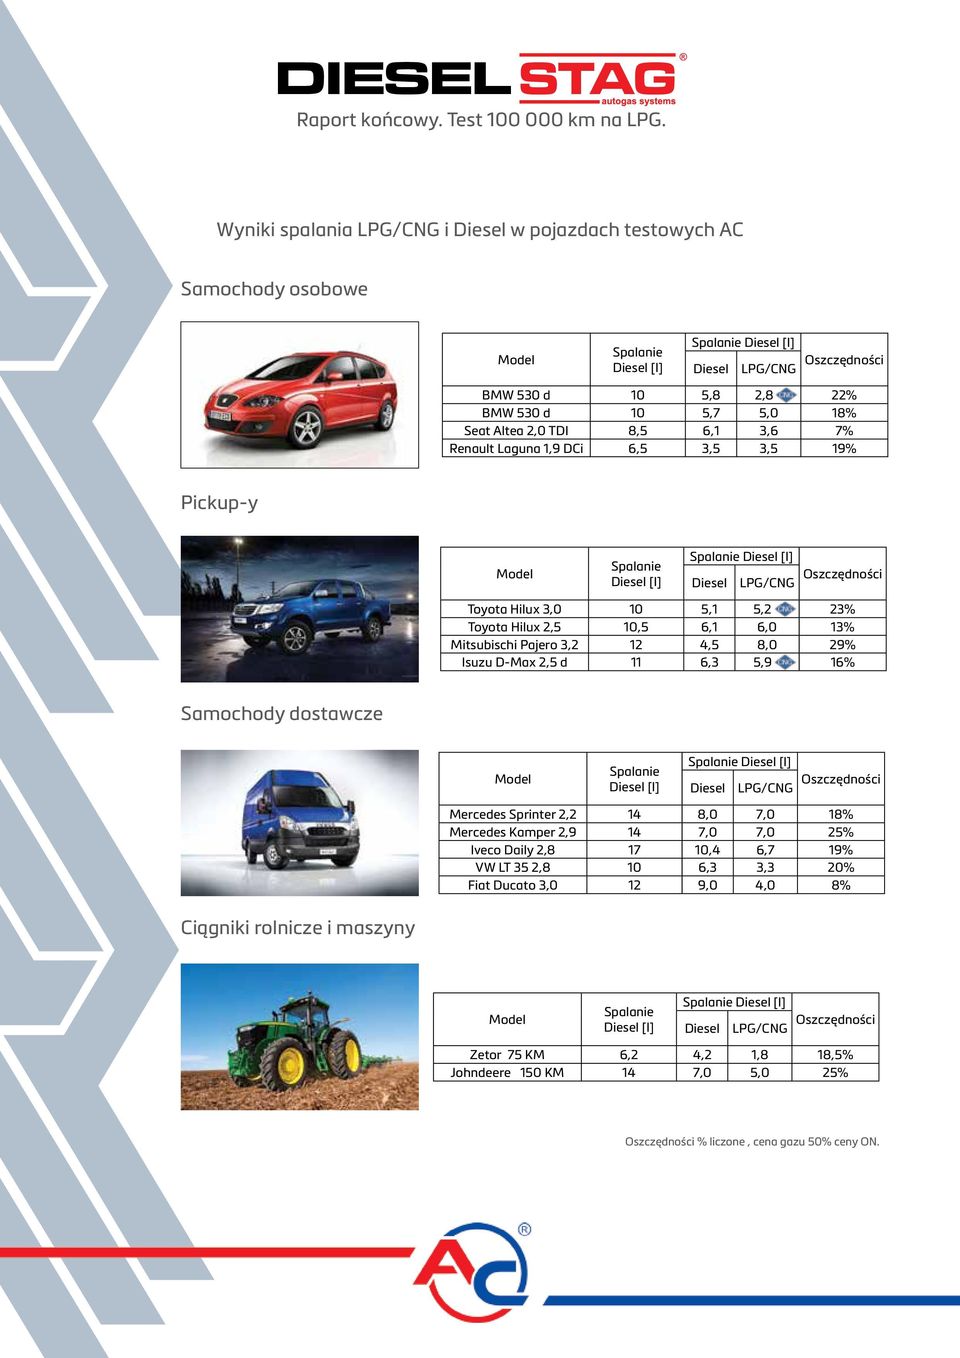 Hilux 2,5 10,5 6,1 6,0 13% Mitsubischi Pajero 3,2 12 4,5 8,0 29% Isuzu D-Max 2,5 d 11 6,3 5,9 16% Samochody dostawcze Model Spalanie Diesel [l] Spalanie Diesel [l] Diesel LPG/CNG Oszczędności